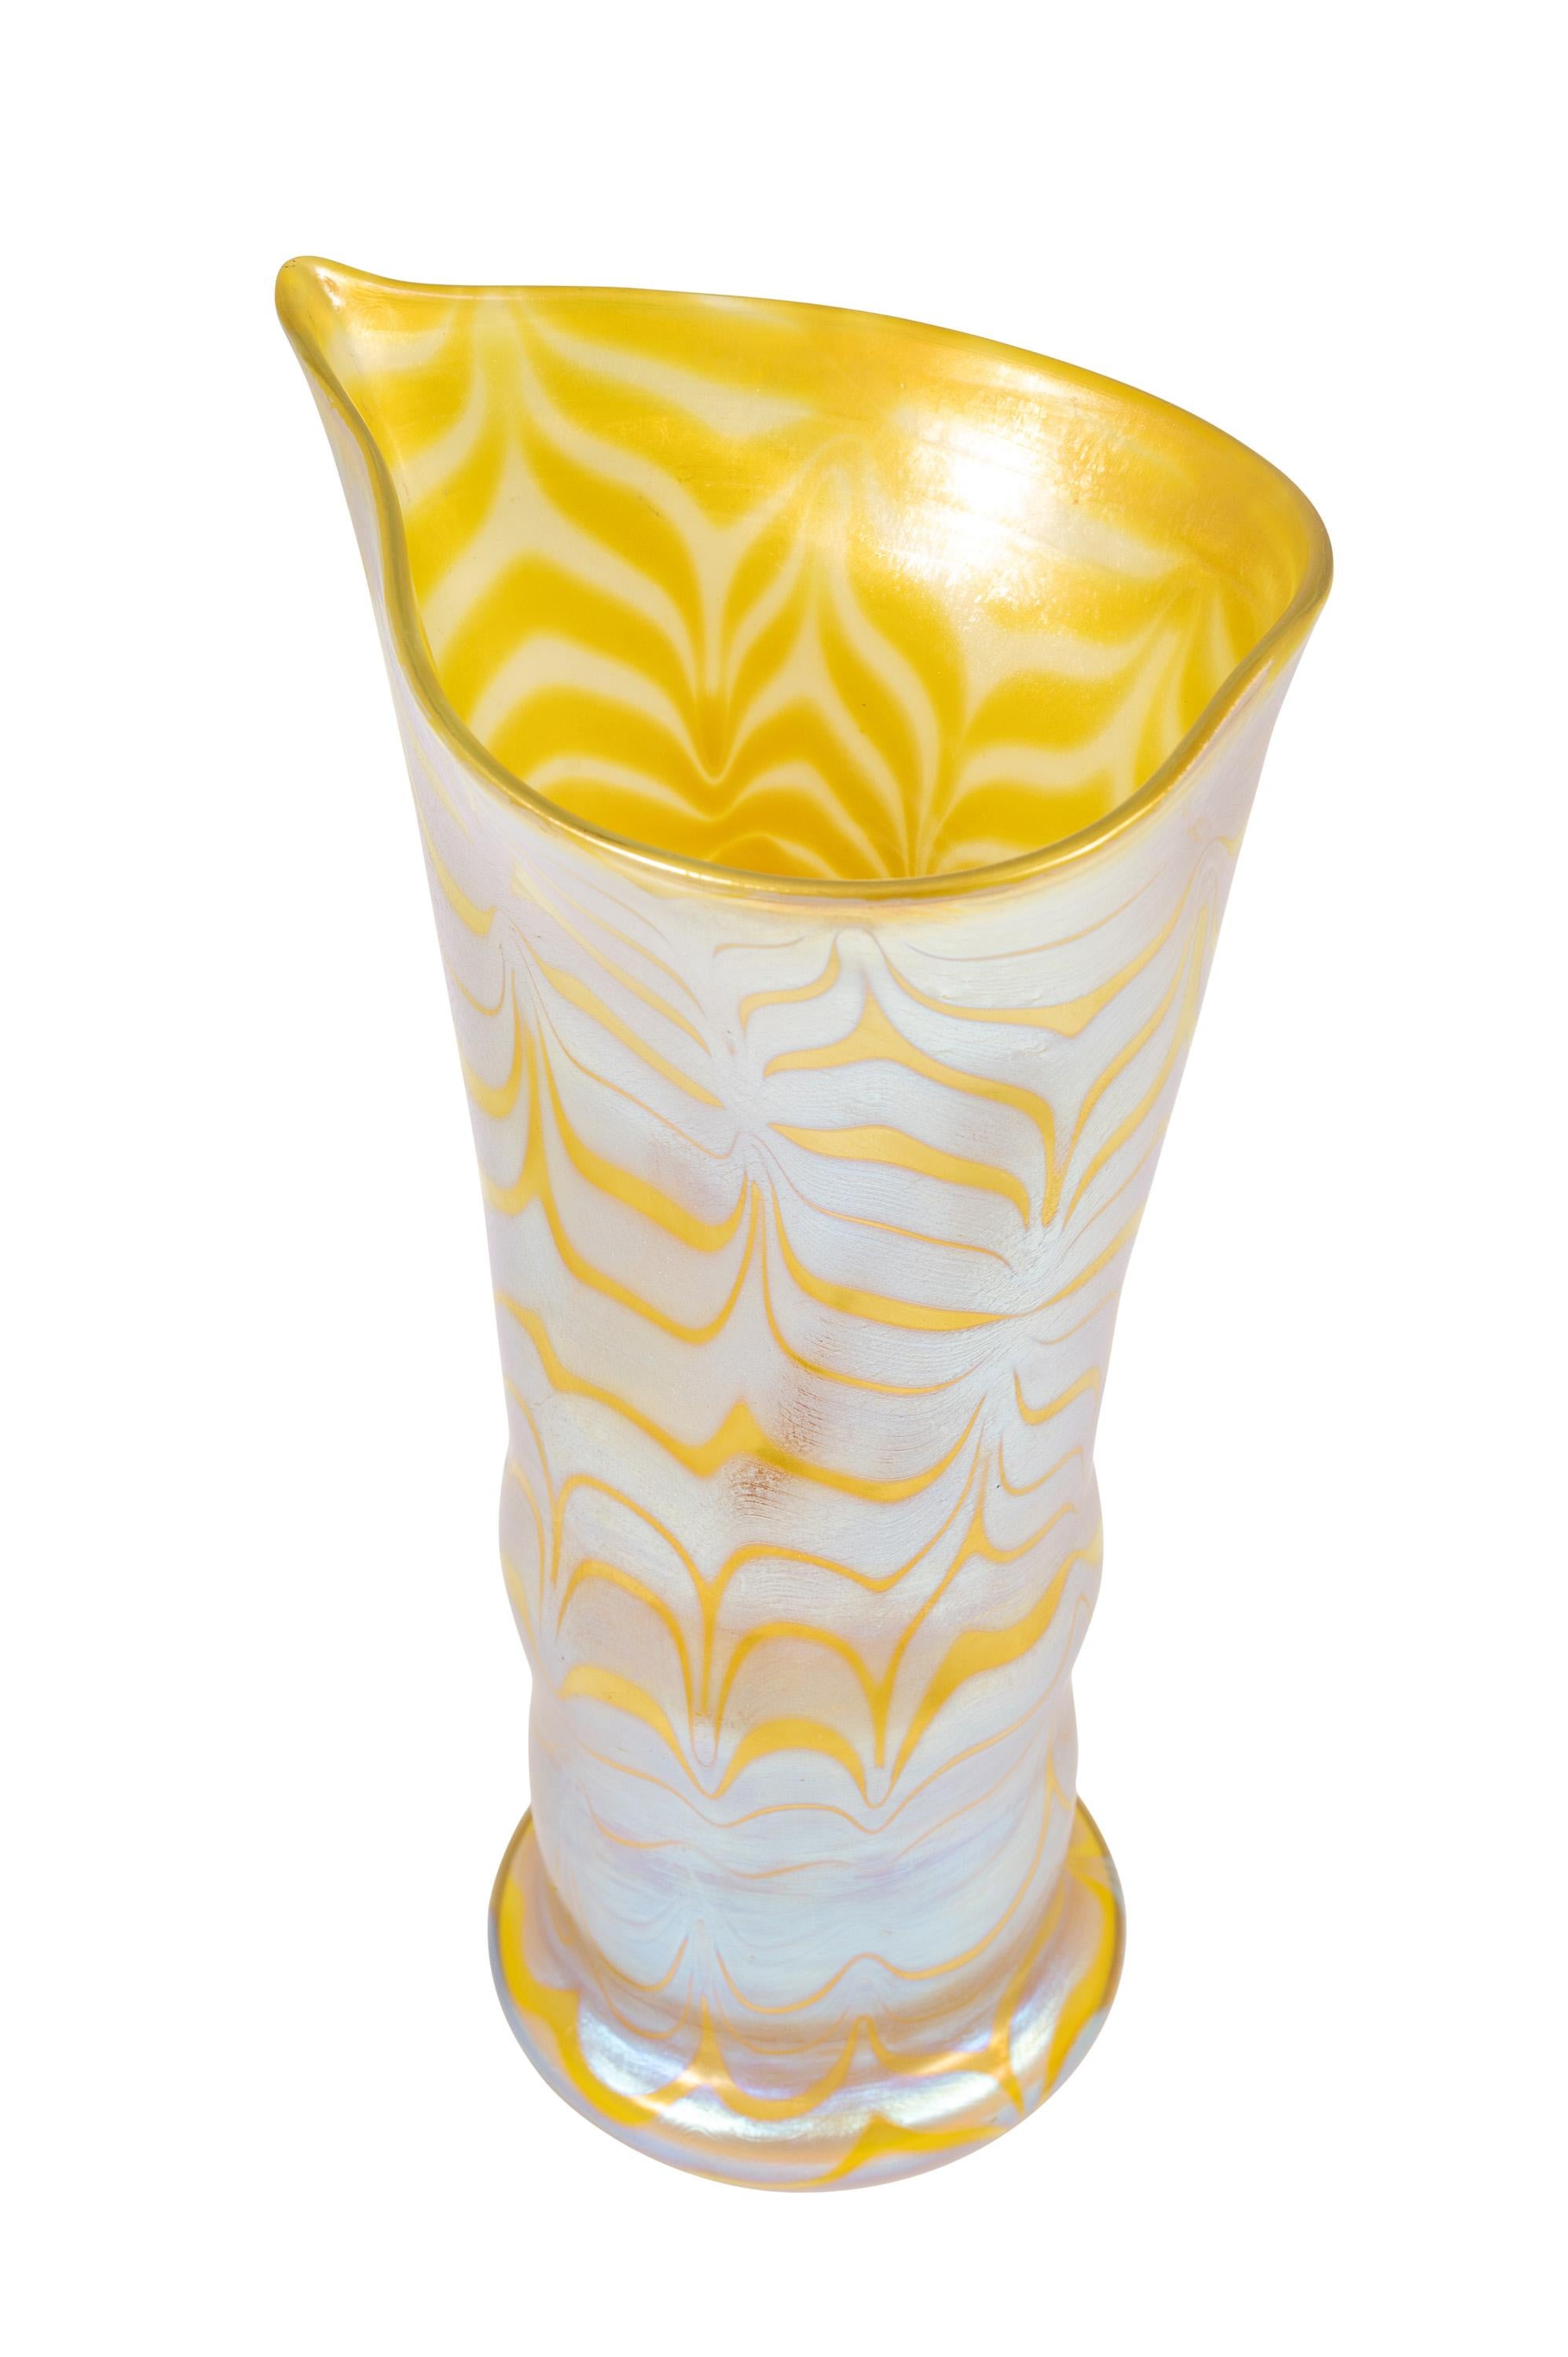 Austrian Bohemian Glass Vase Loetz circa 1900 Art Nouveau Jugendstil Yellow Signed For Sale